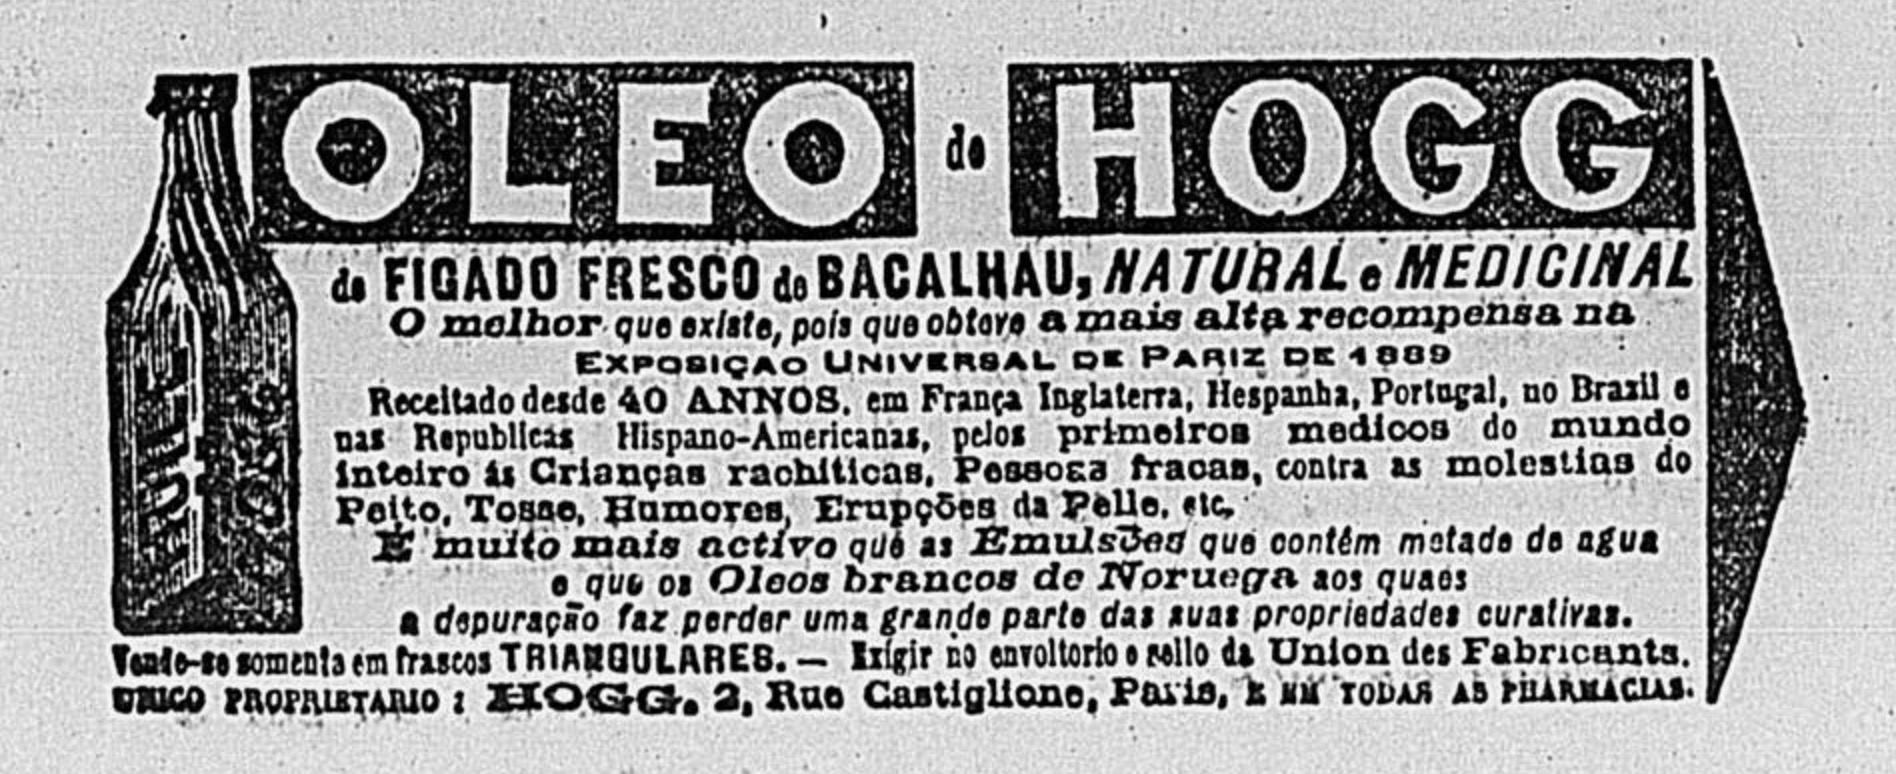 Propaganda veiculada em 1897 promovendo o Óleo de Hogg